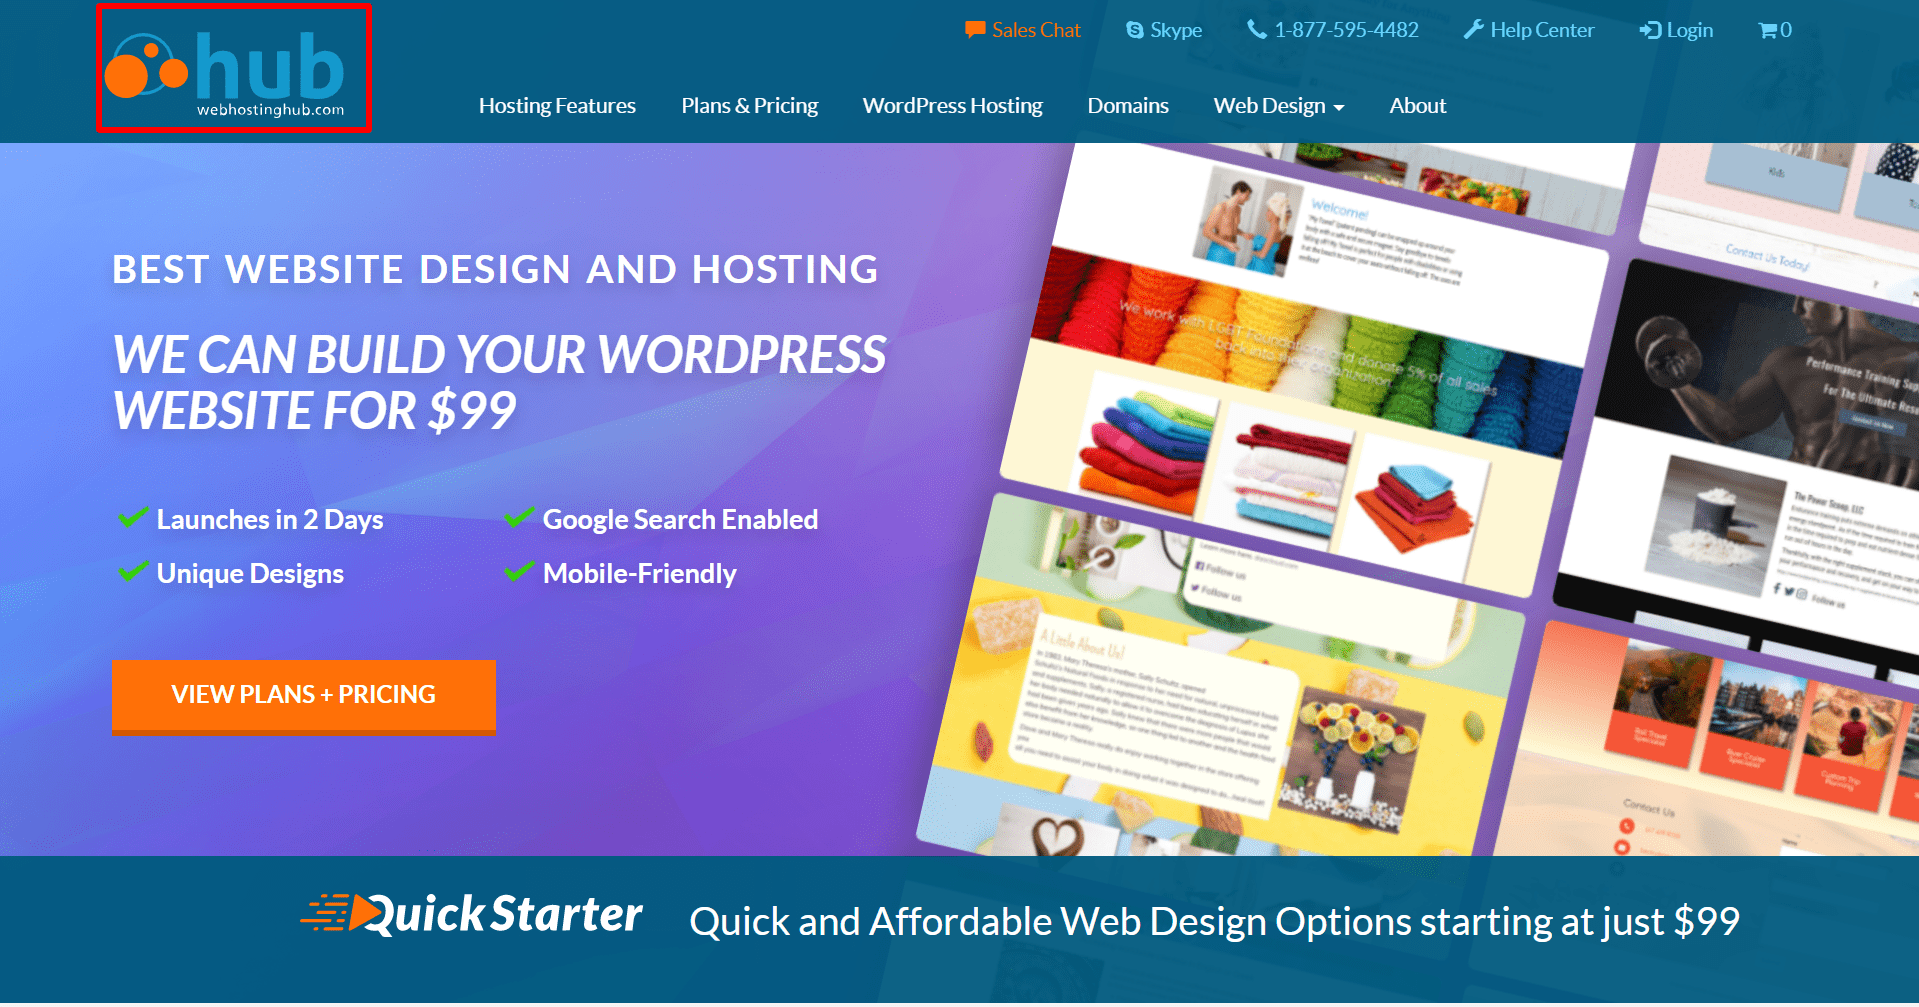 Best-Website-Design-and-Hosting-Services-Web-Hosting-Hub